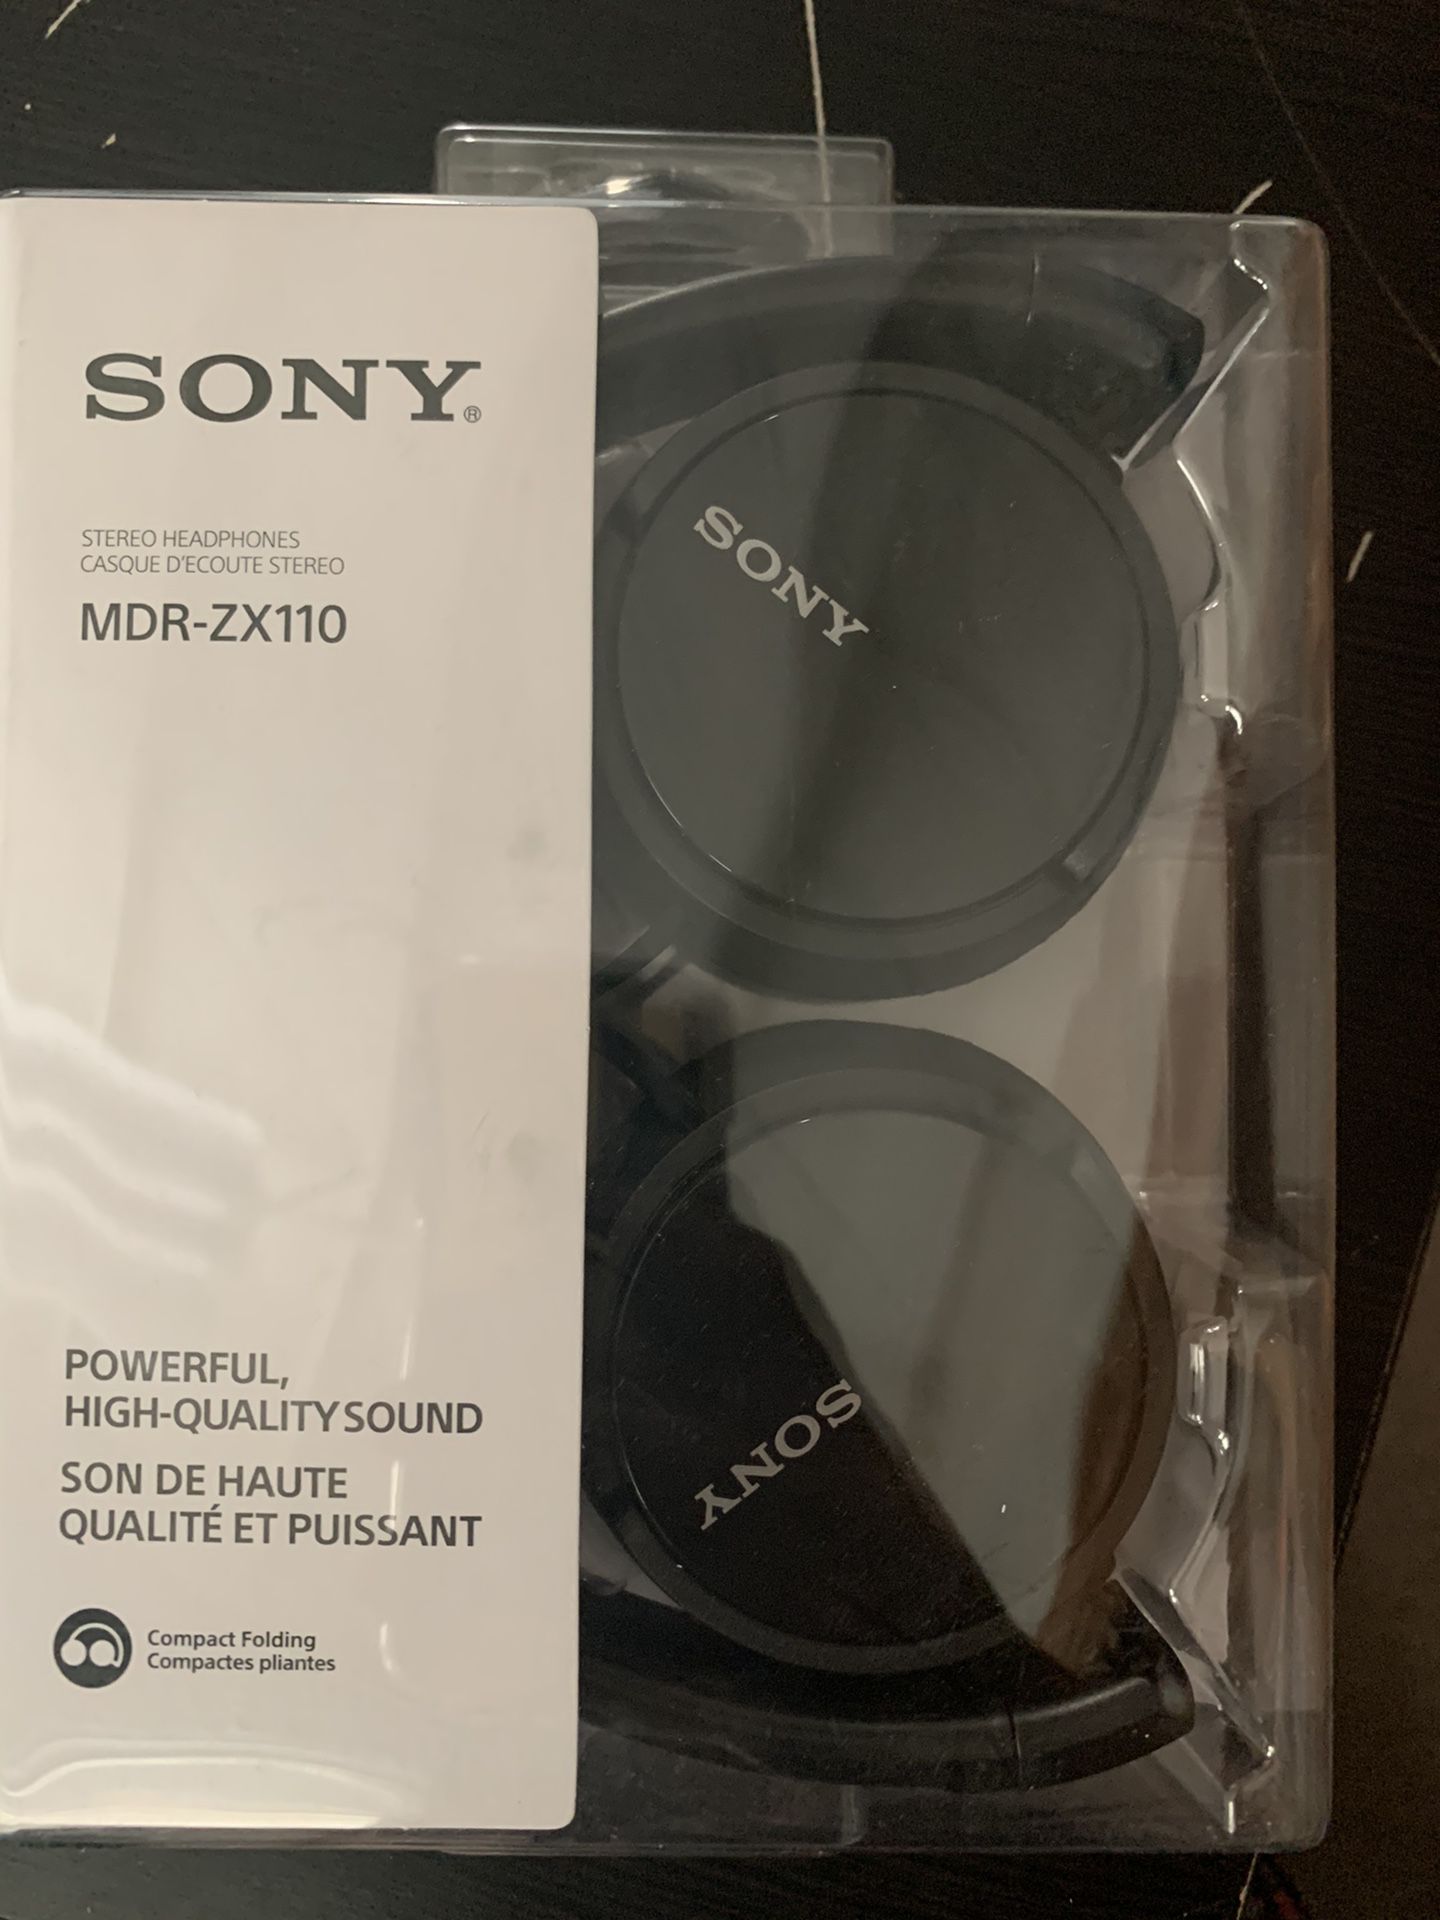 Sony headphones madezx110